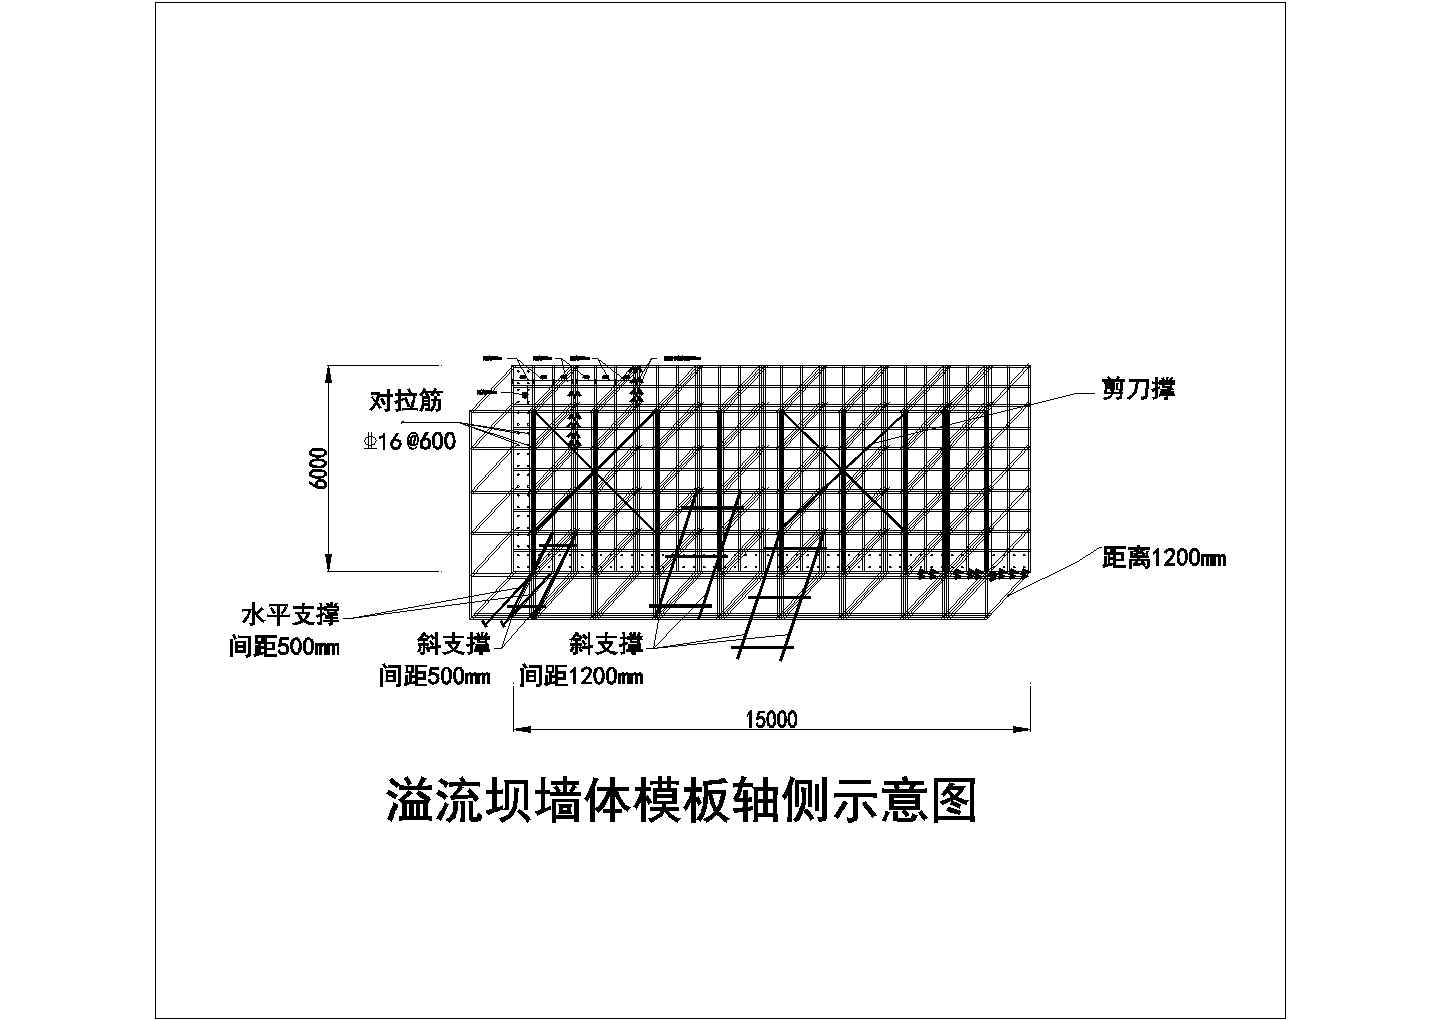 某工程框架剪力墙结构大模板施工方案图